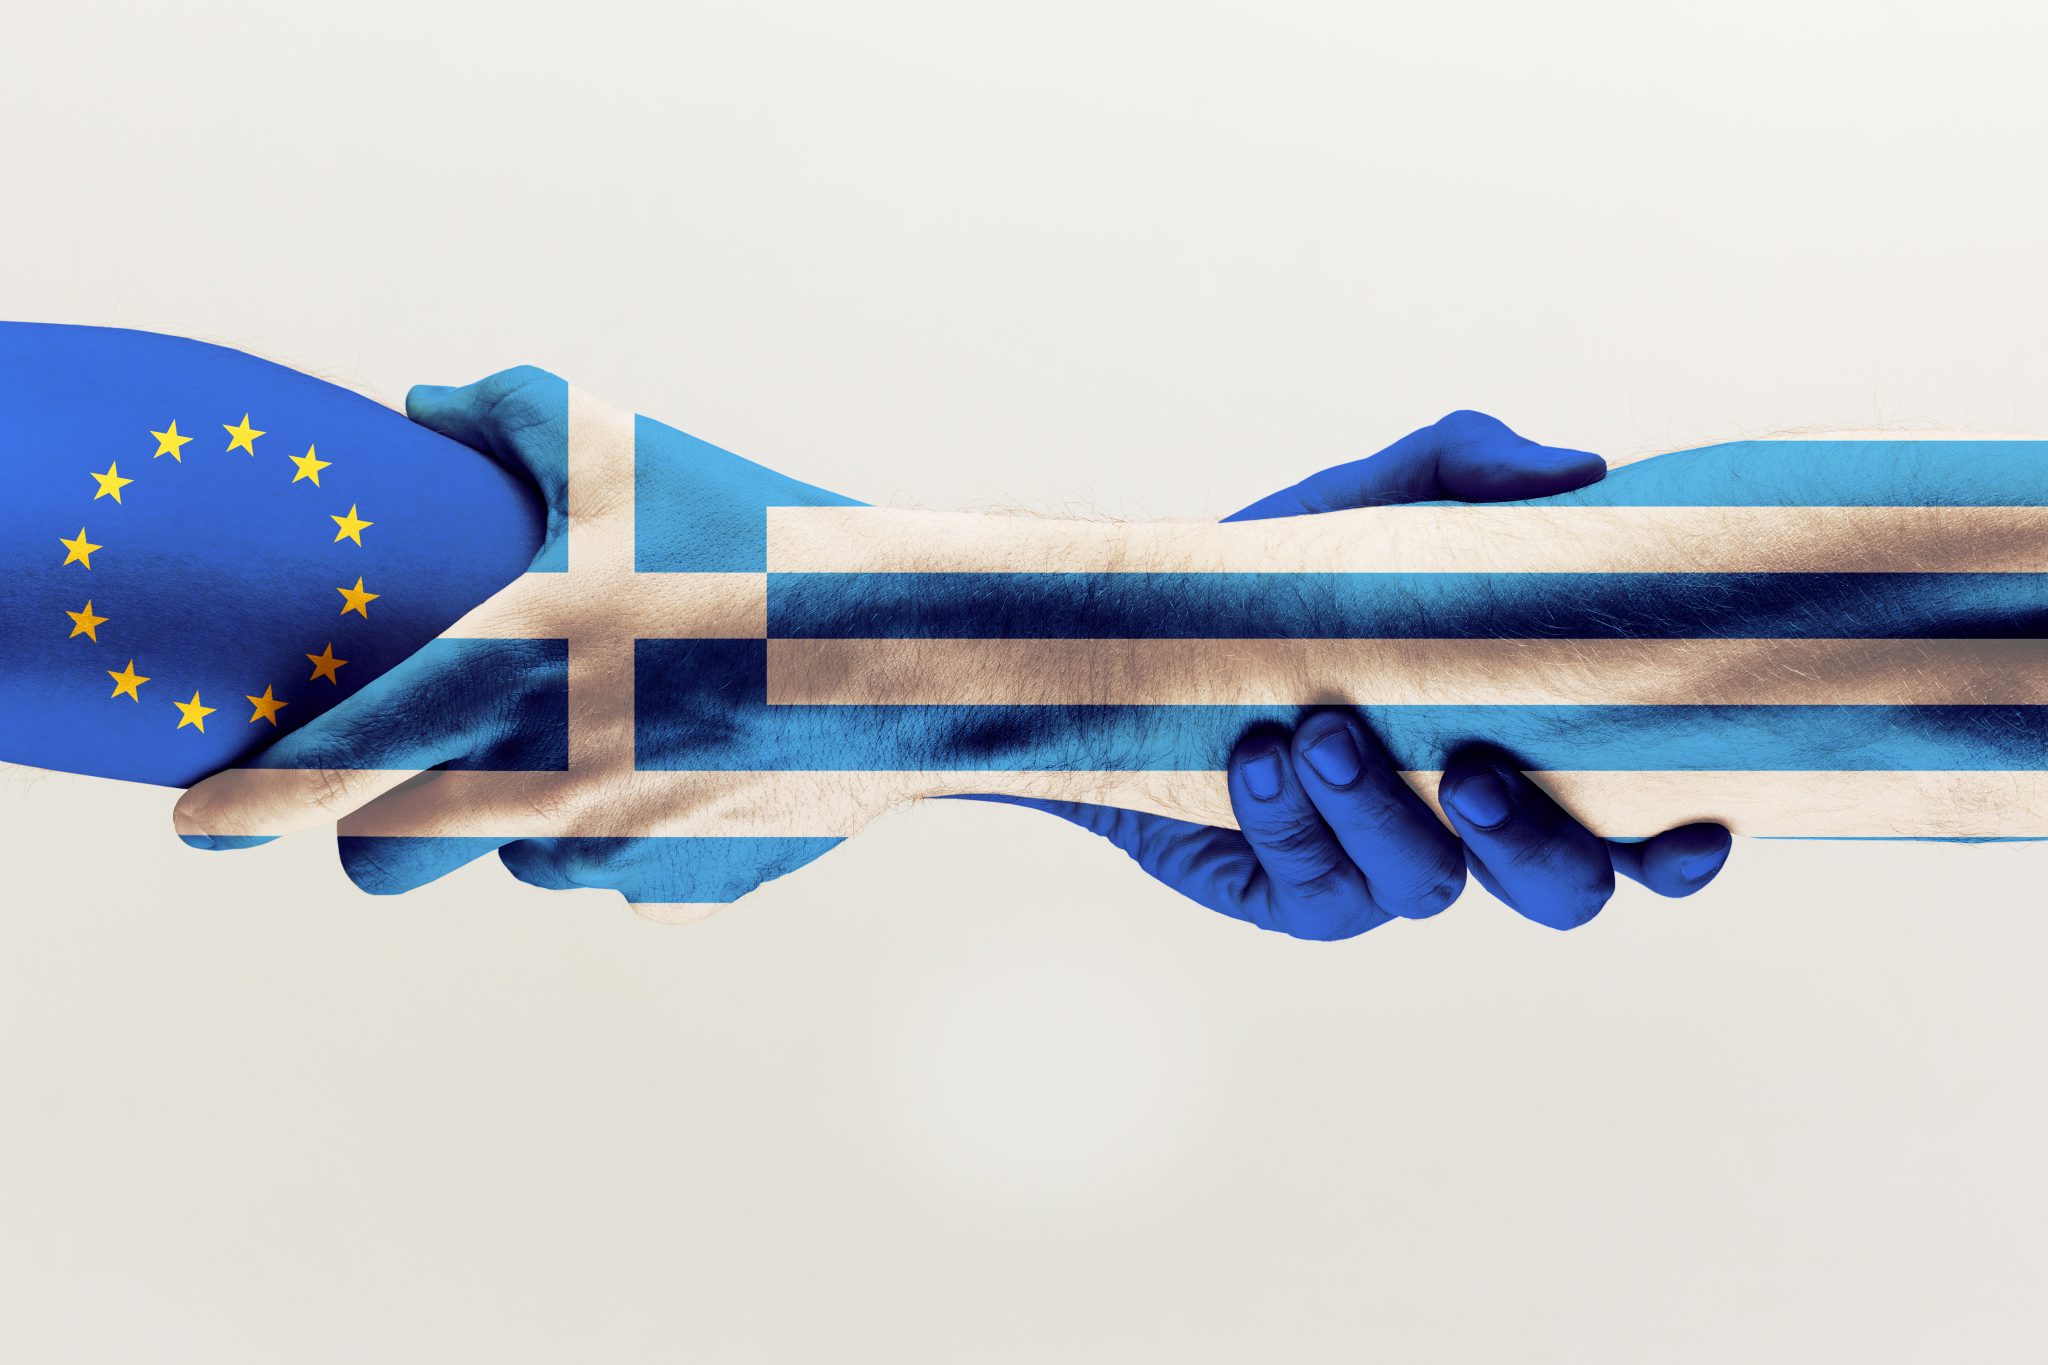 Accordo partenariato grecia